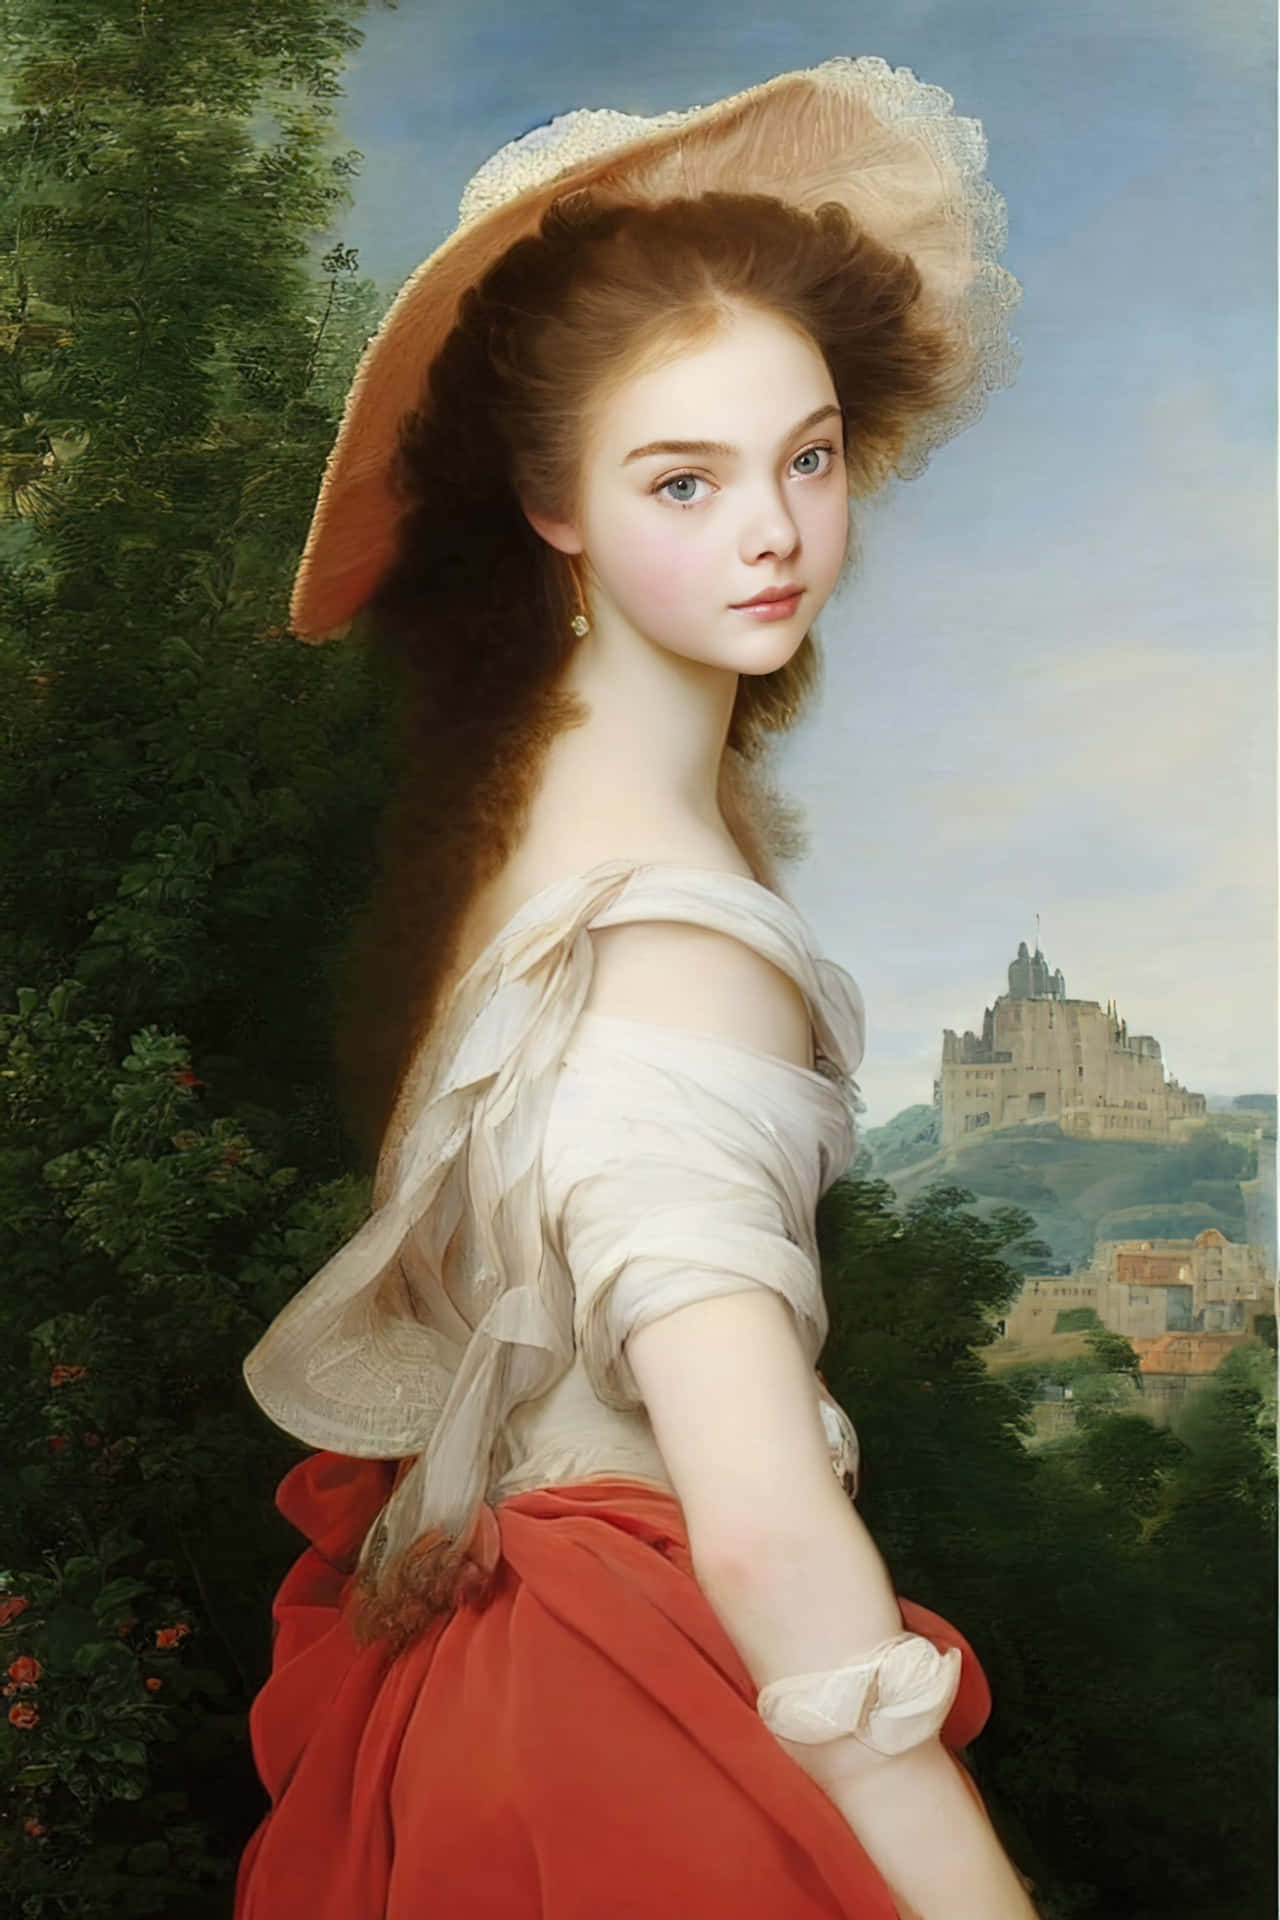 Etmaleri Af En Kvinde I En Rød Kjole.